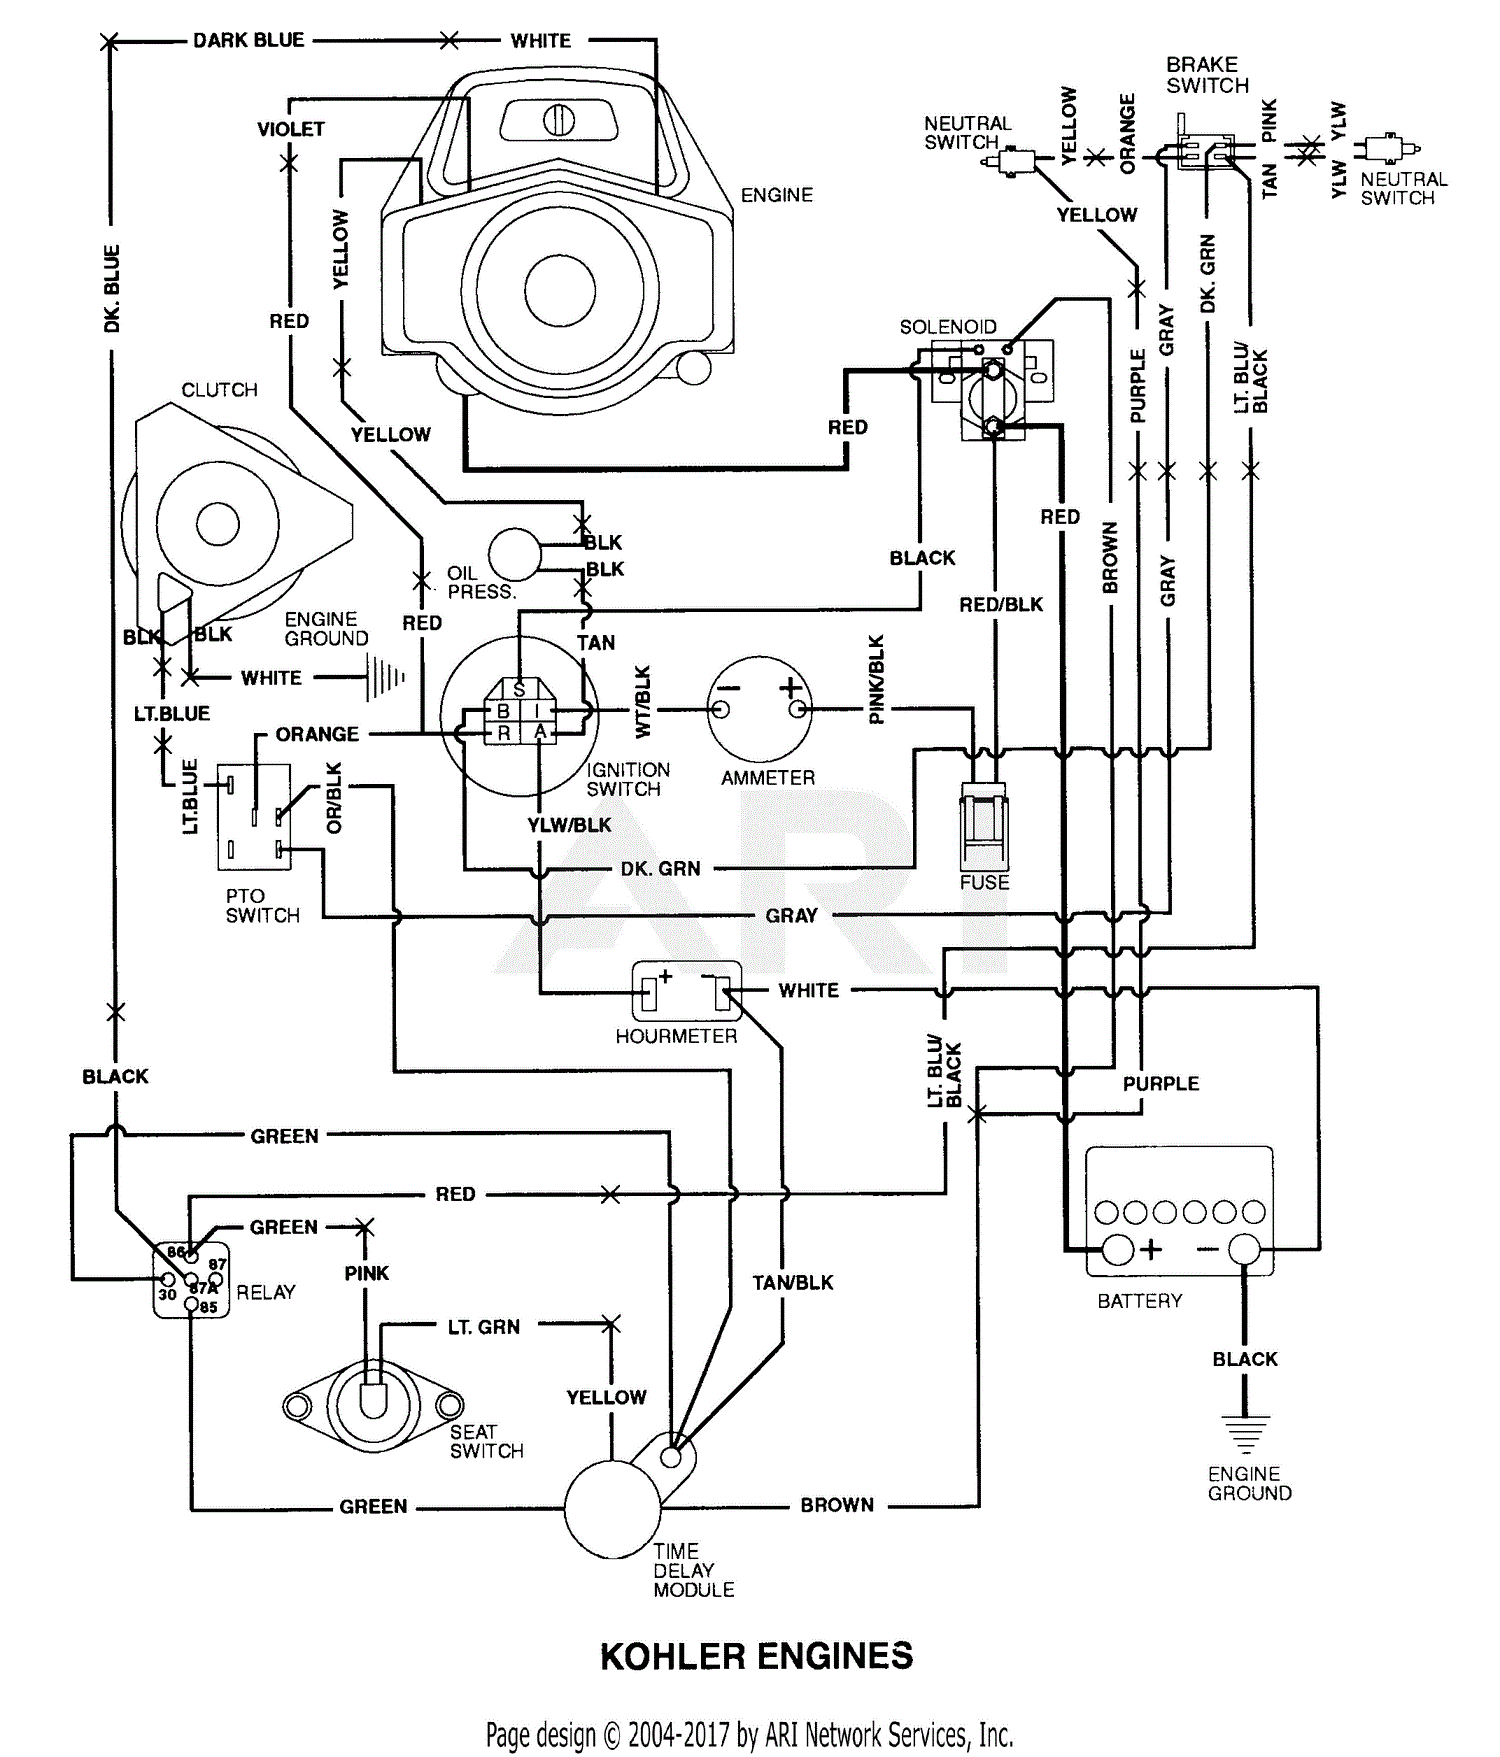 Kohler K341 Wiring Diagram - Wiring Diagram